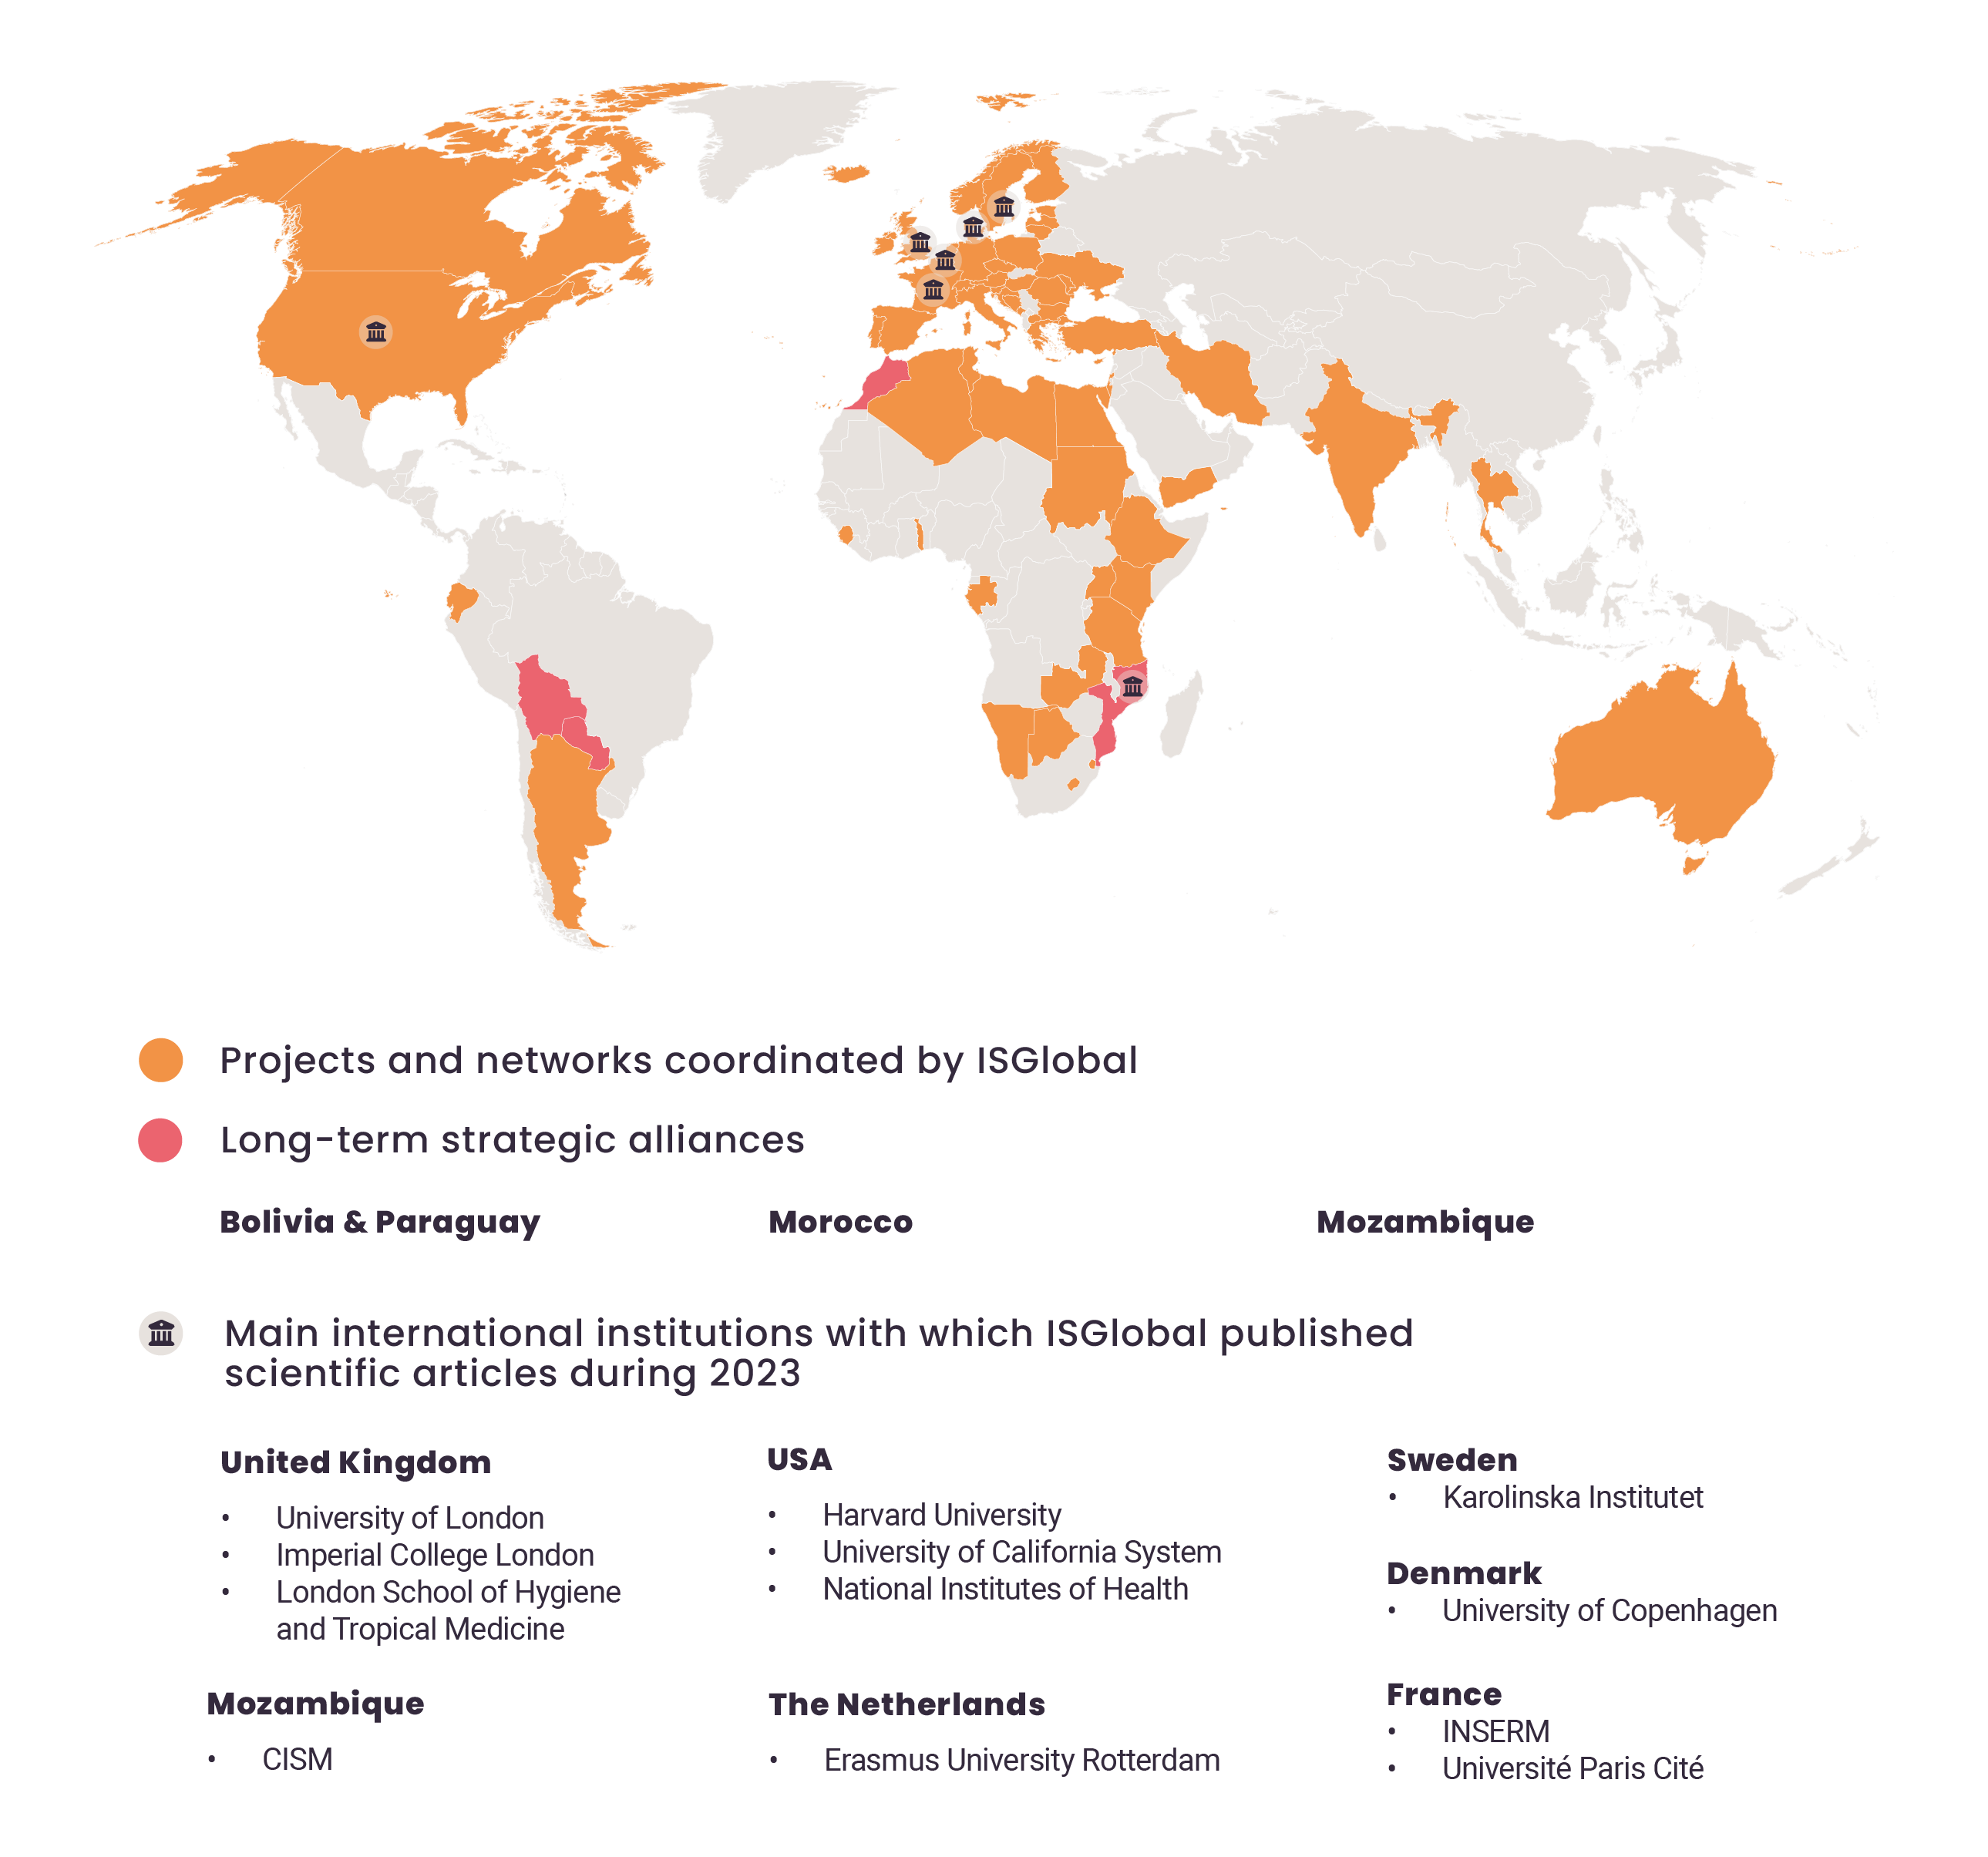 Mapa de projectes destacats i aliances estratègiques de llarg recorregut d'ISGlobal per l'any 2023